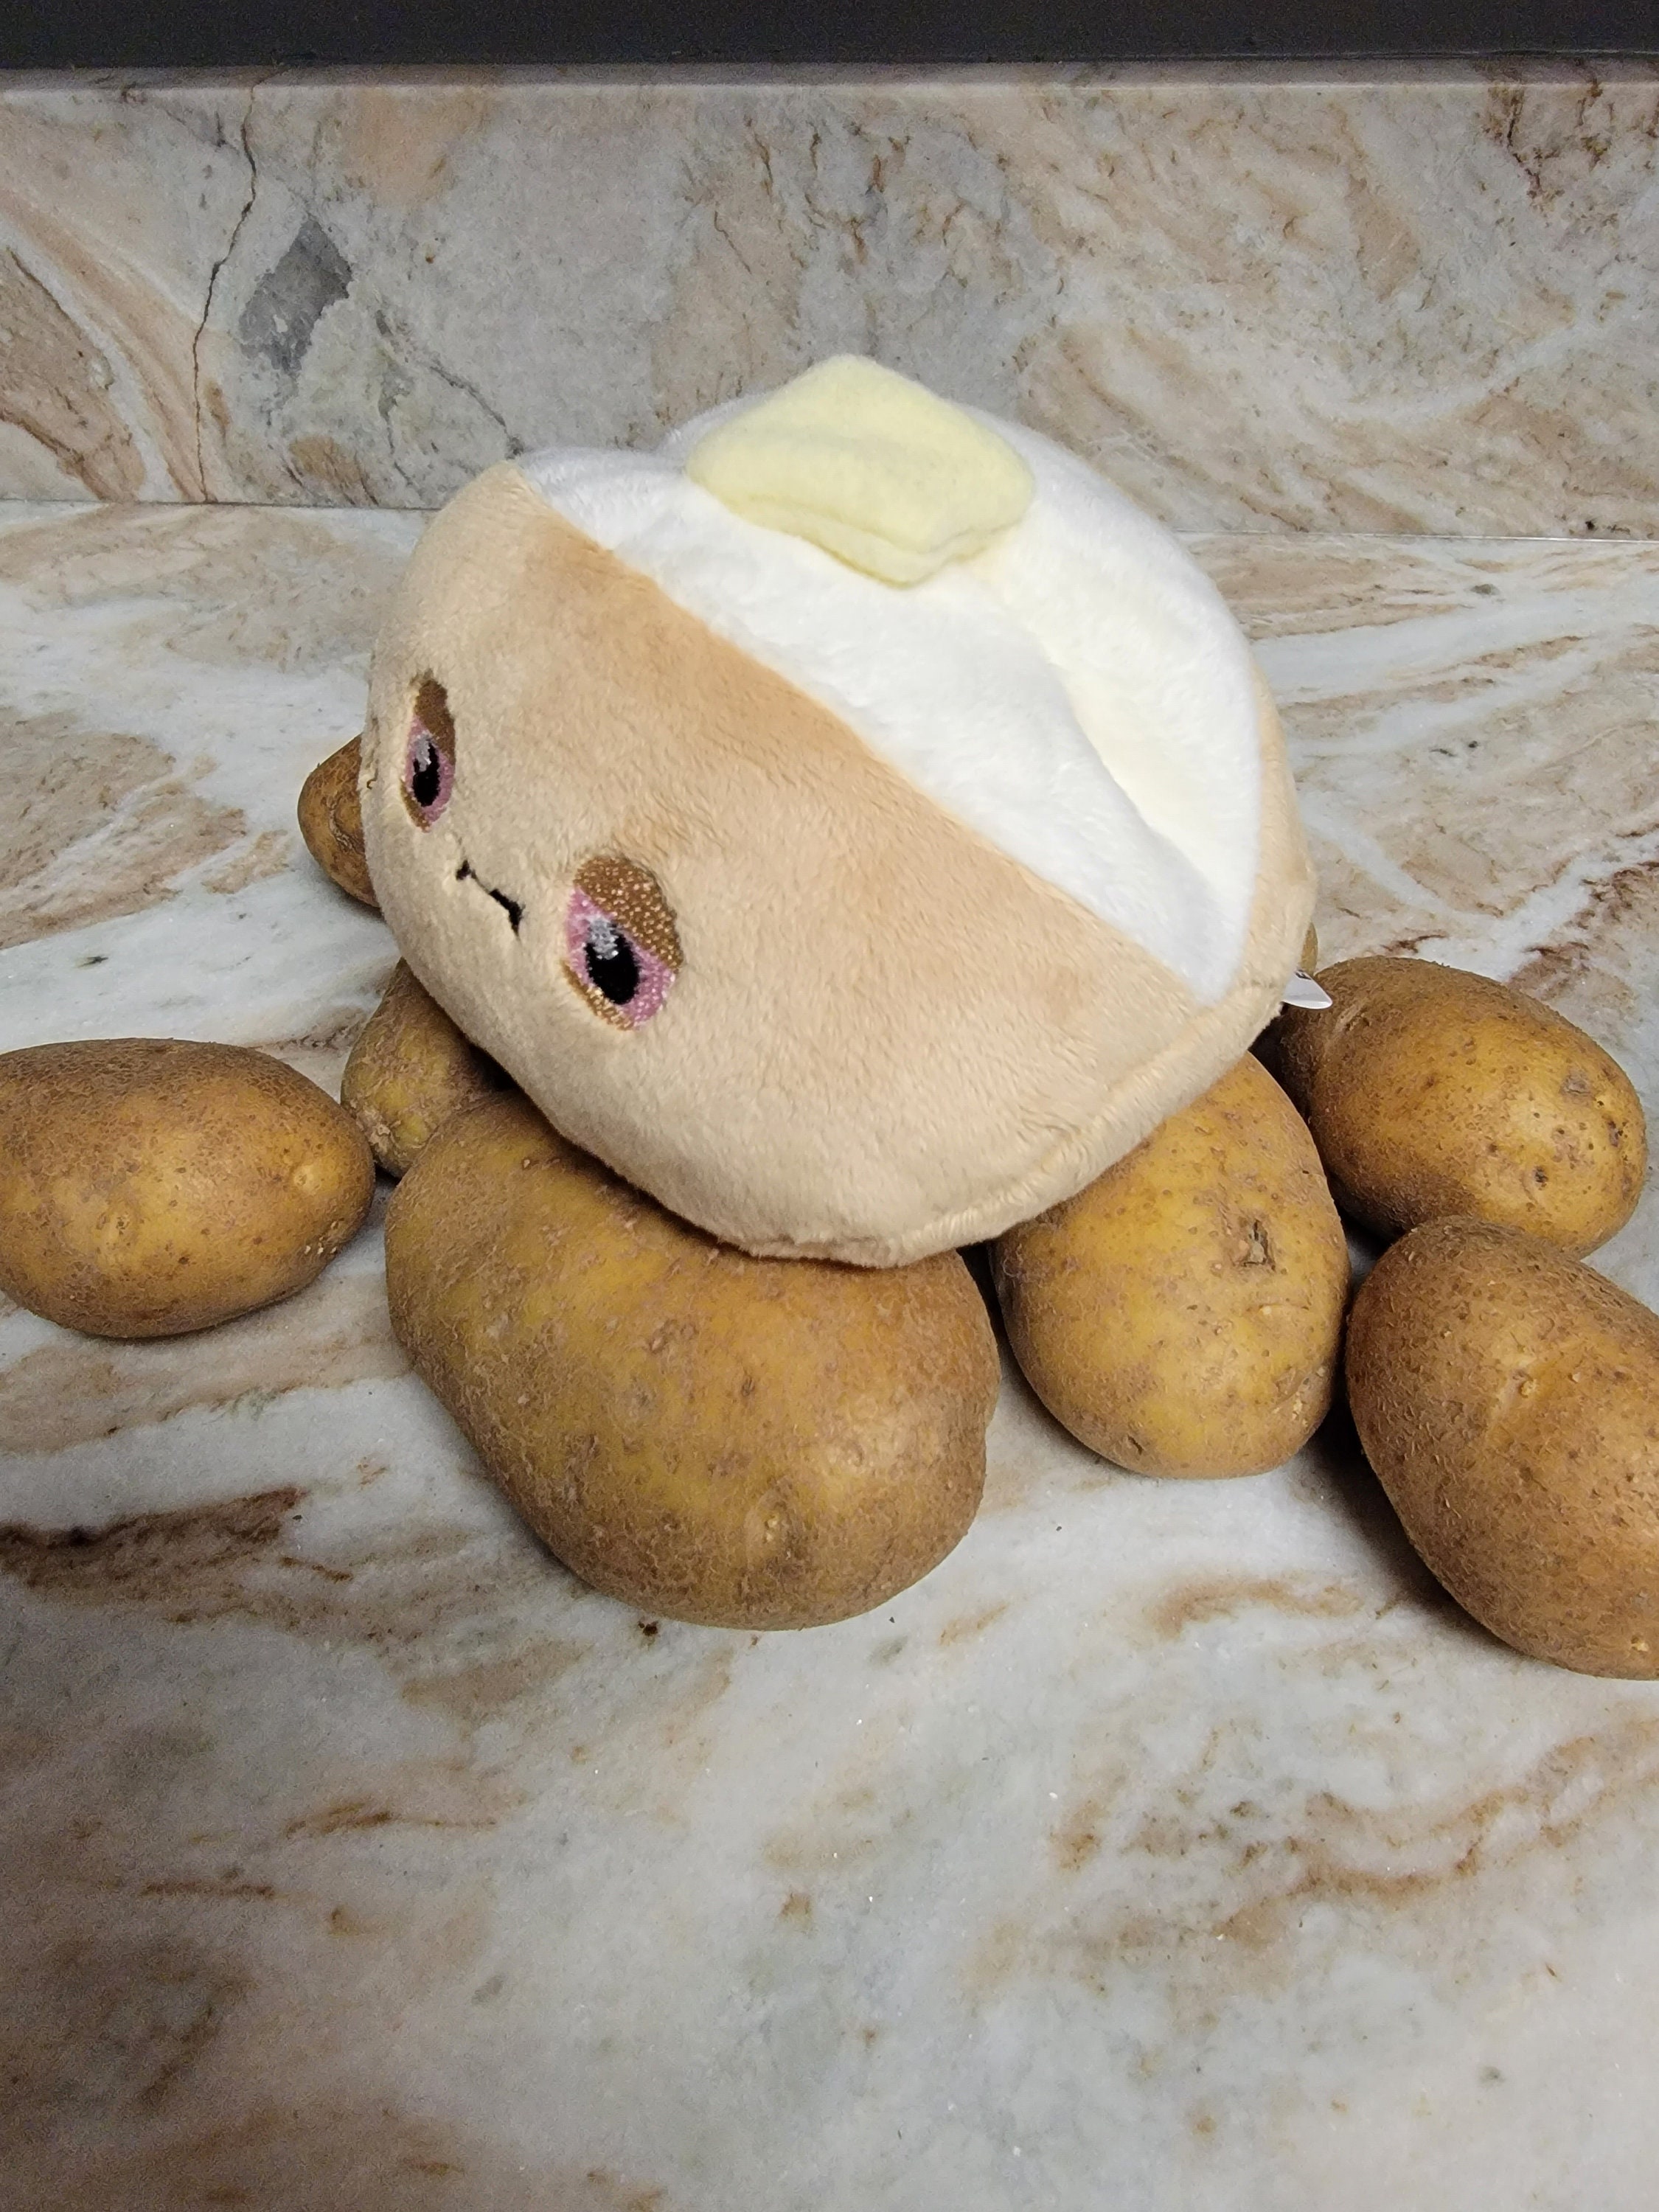 Cute Small Potato Plush Toy Net Red Expression Potato Throw Pillow